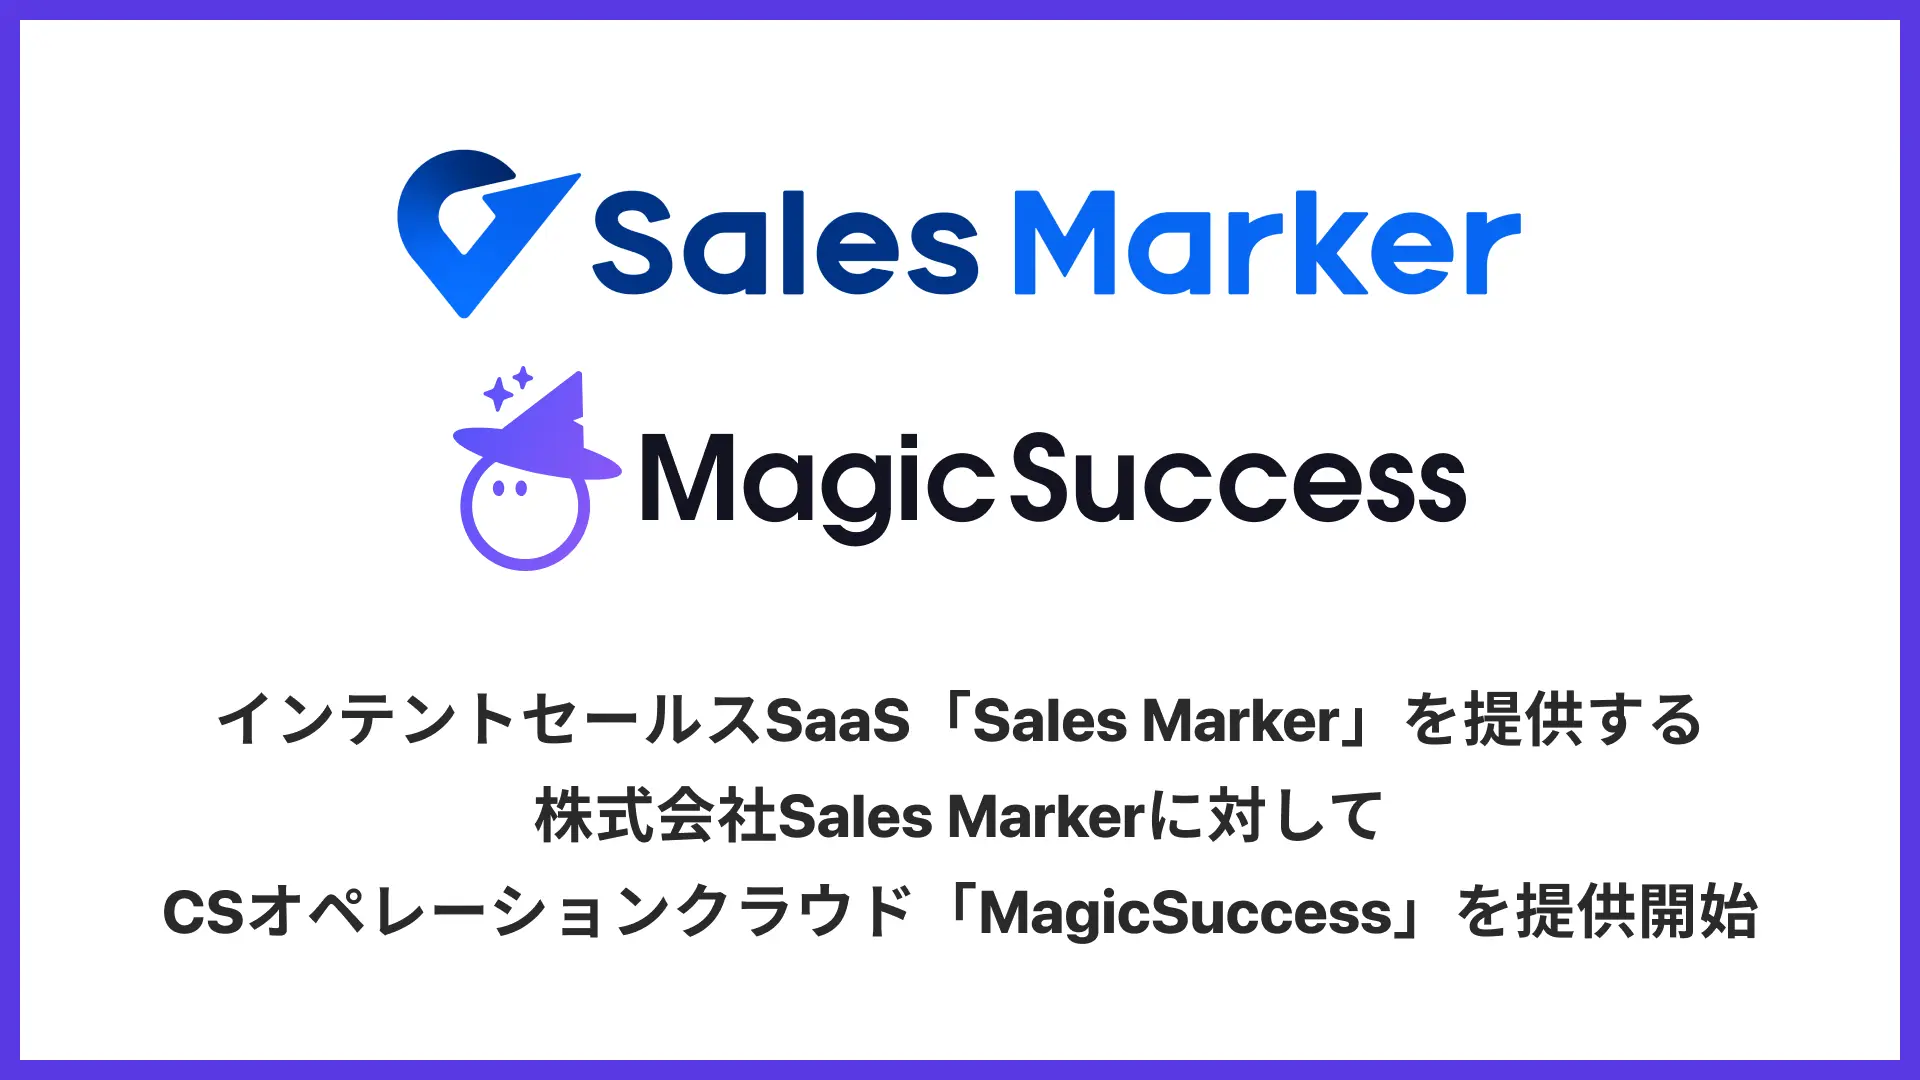 株式会社UPDATA（本社：東京都港区、代表取締役：岡村雅信）は、インテントセールスSaaS「Sales Marker」を開発・提供する株式会社Sales Marker（本社：東京都港区、代表取締役 CEO：小笠原 羽恭）に対して、CSオペレーションクラウド「MagicSuccess」の提供を開始いたしました。